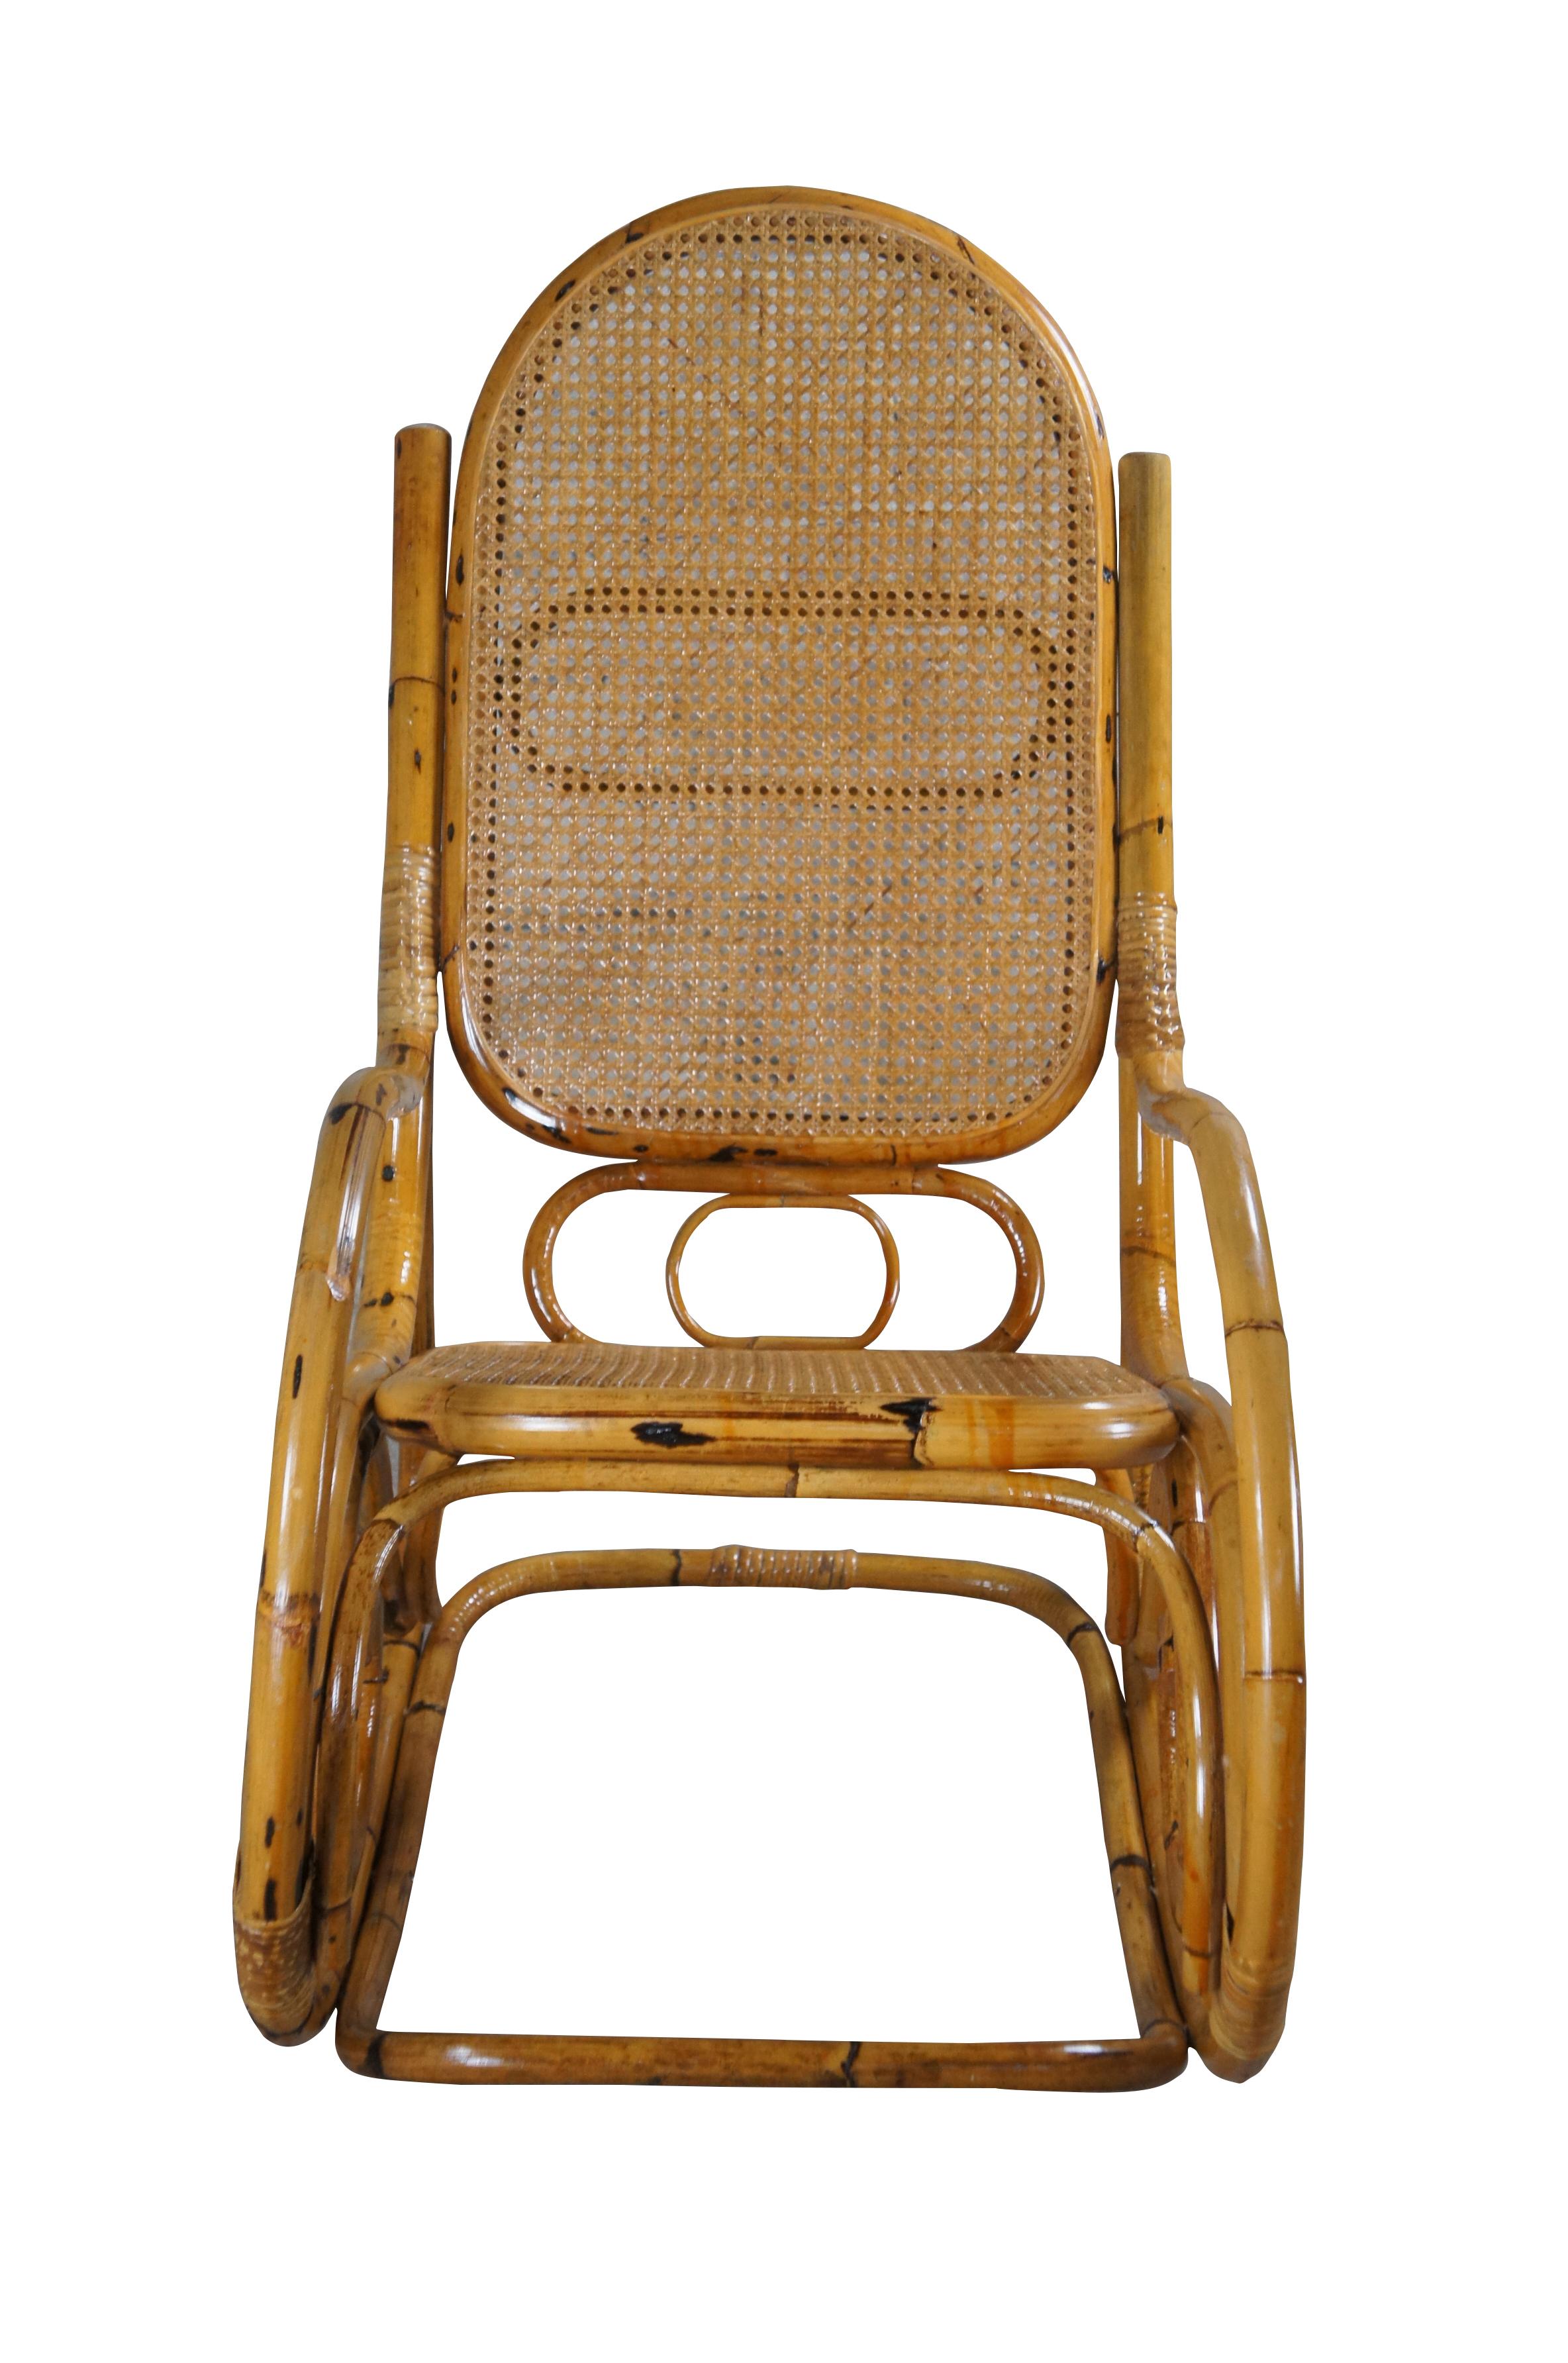 Grand fauteuil à bascule en bois courbé Icone, attribué à Thonet. Fabriqué en bambou avec dossier et assise cannés.

Mesures : 22